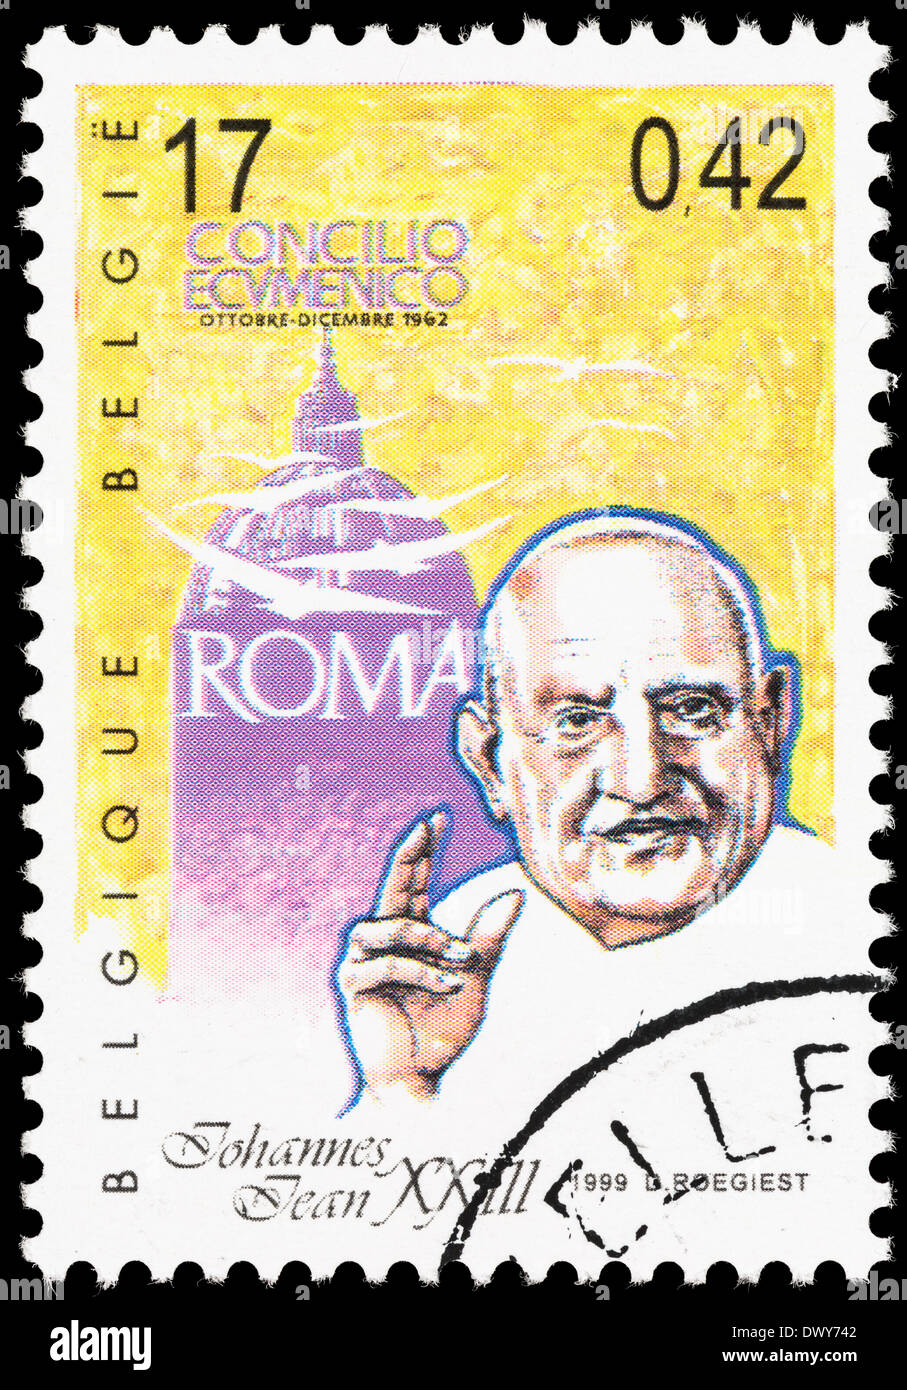 Belgique timbre-poste avec une illustration du Pape Jean XXIII. Banque D'Images